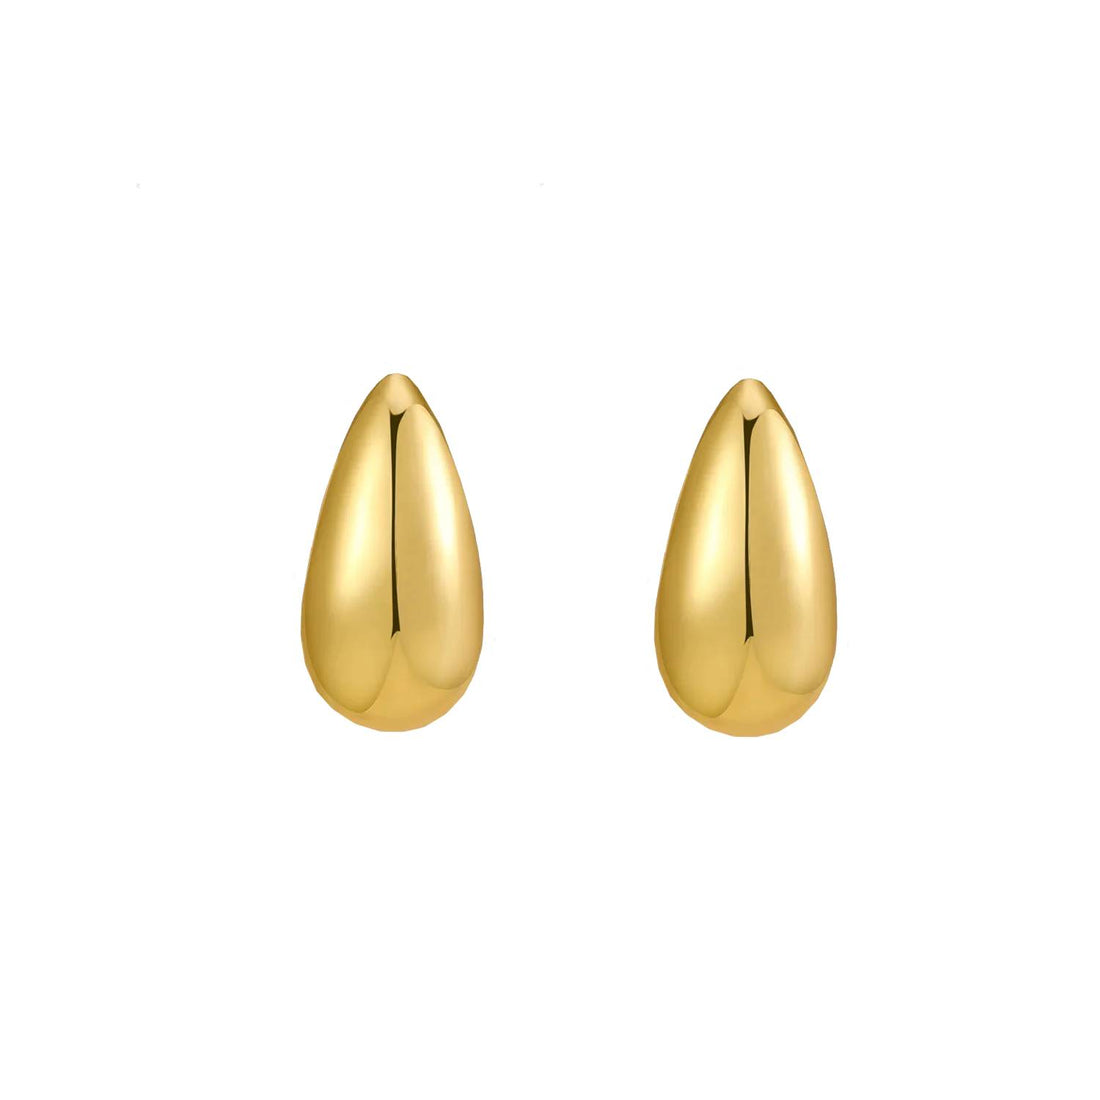 Teardrop earrings small